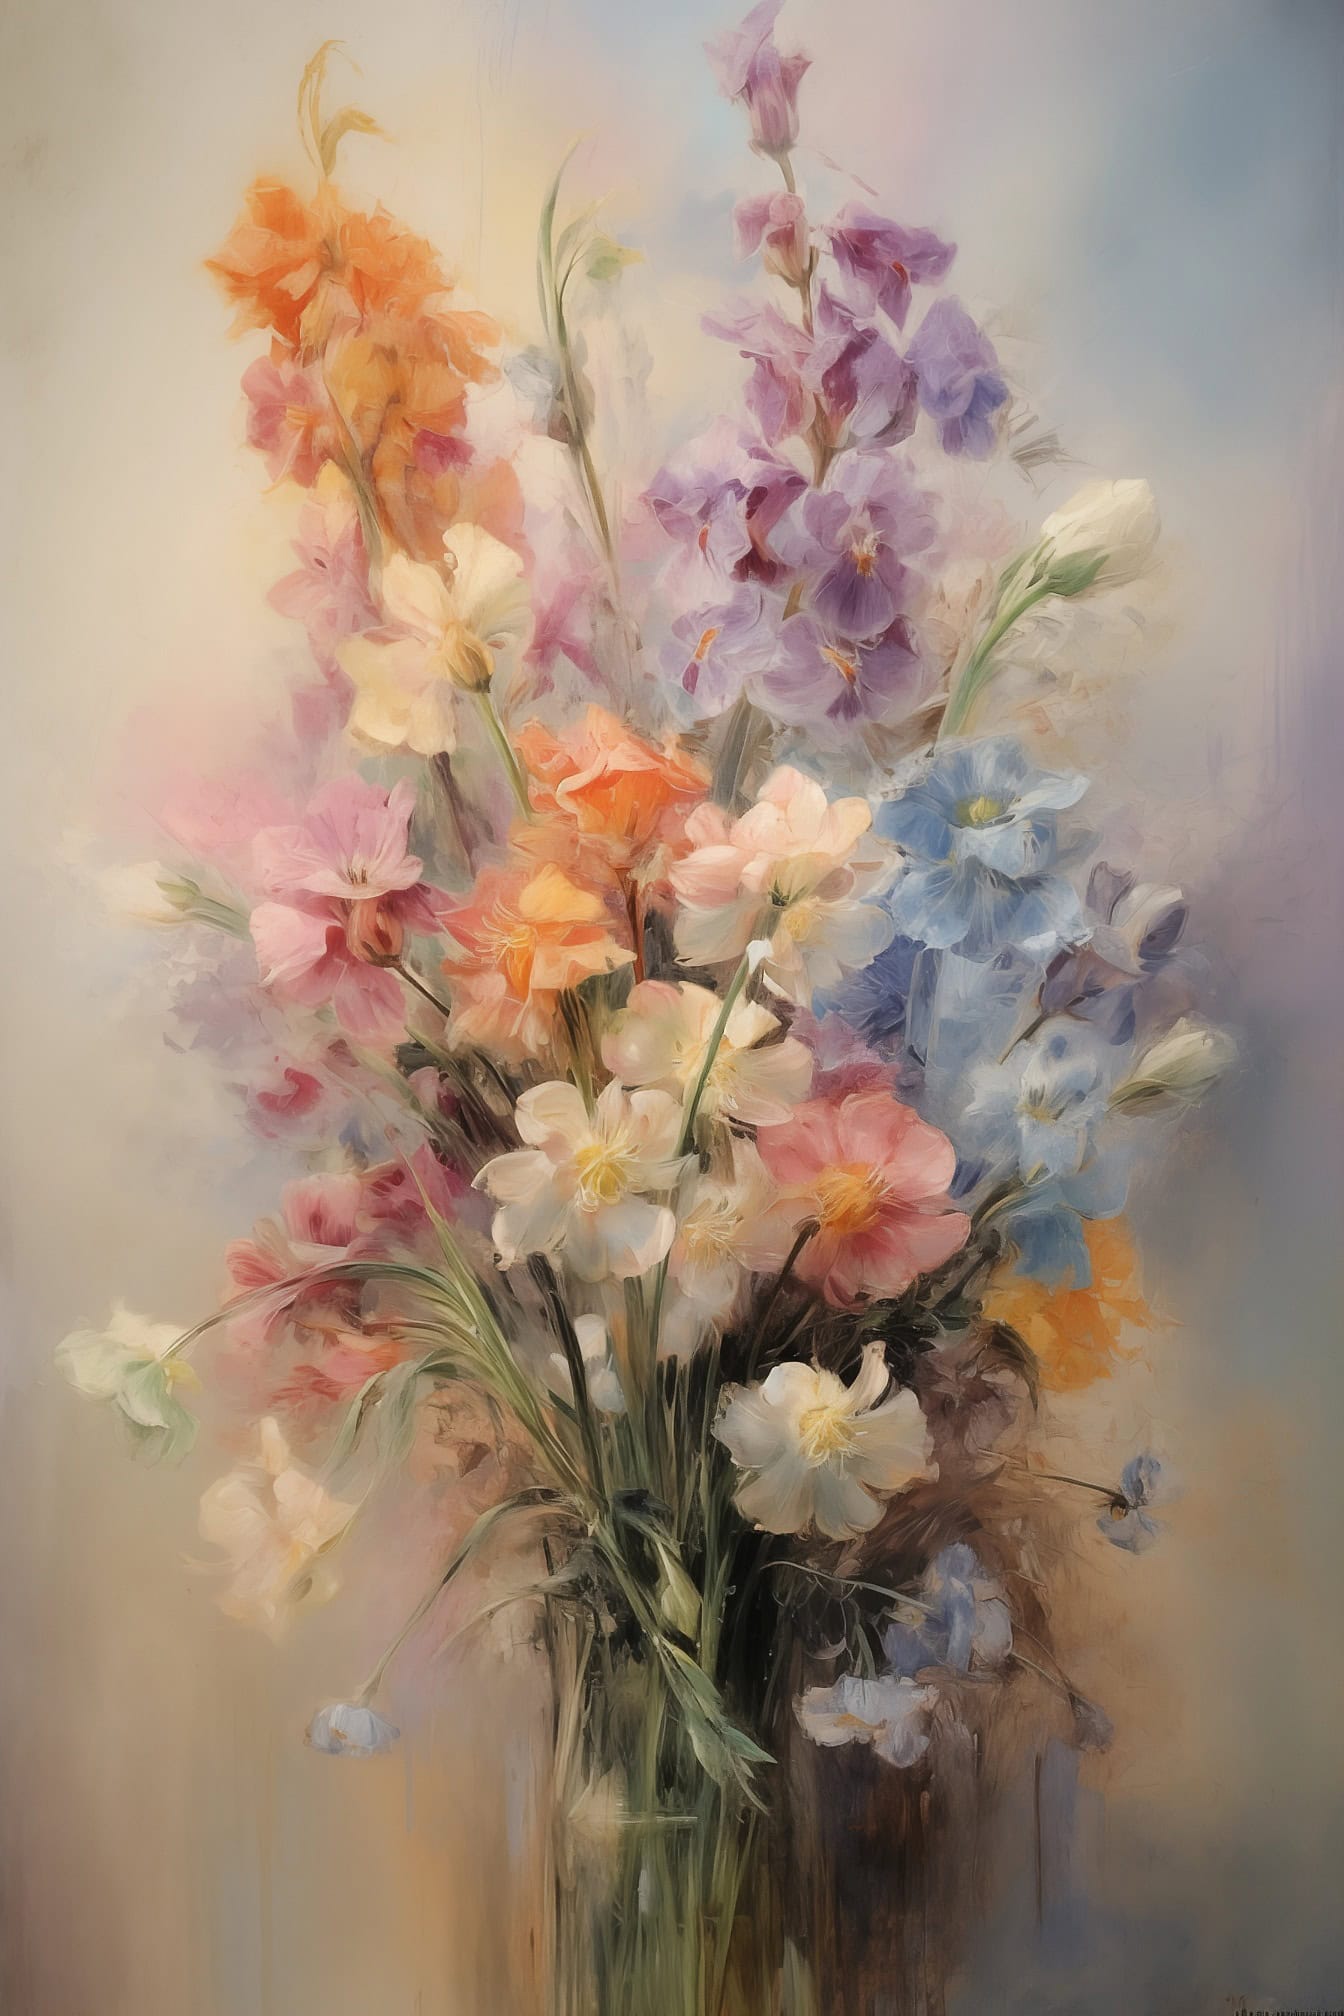 Un hermoso bodegón pintura al óleo en colores pastel de flores con fondo borroso